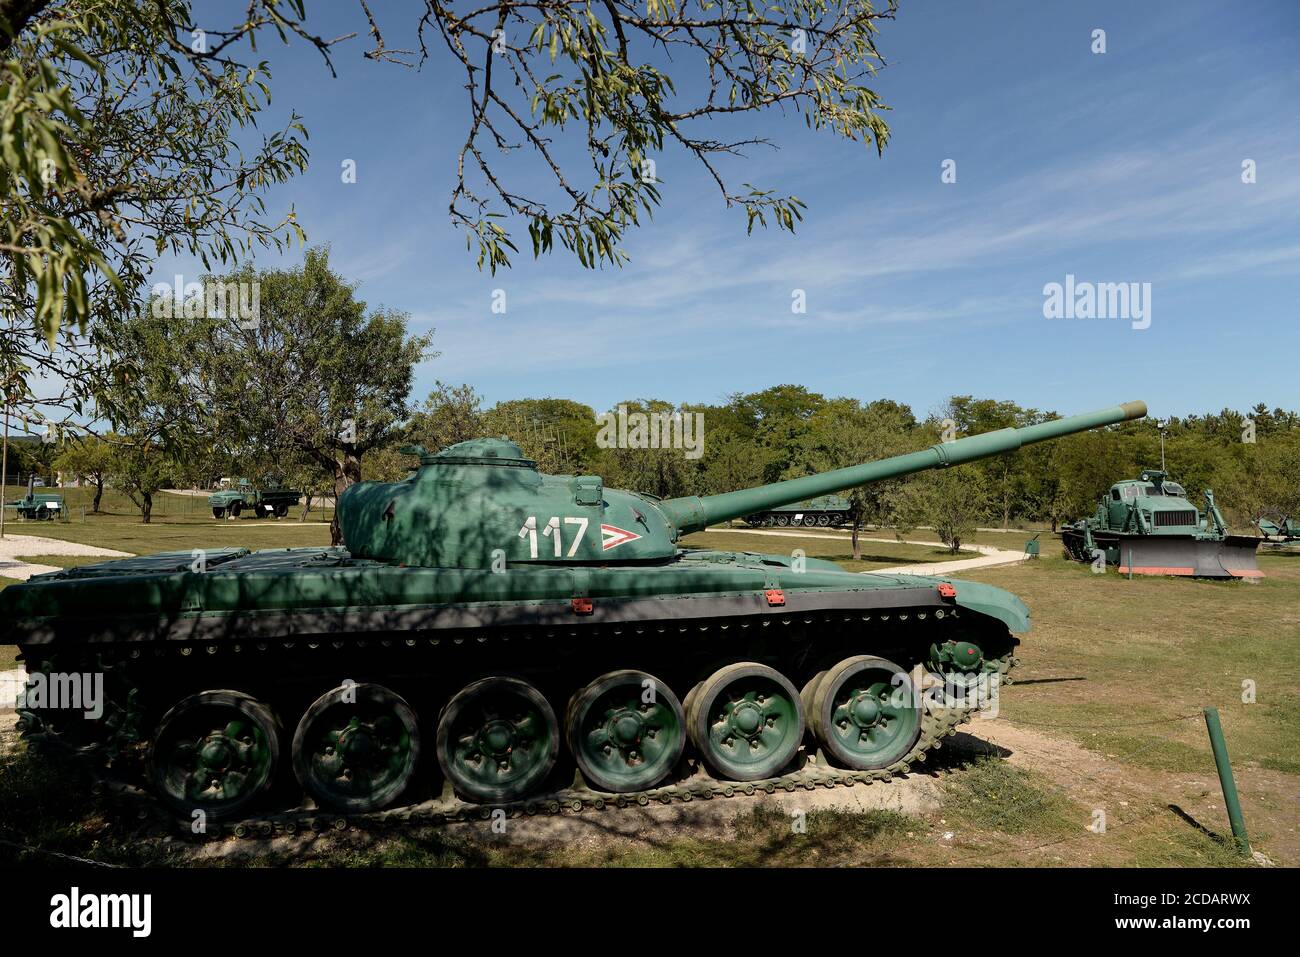 Zanka, Hongrie. 27 août 2020. Le char de combat principal T-72 est exposé au musée.le Musée militaire ZÃnka est une exposition en plein air contenant une variété d'armurerie utilisée par les forces de défense hongroises. ZÃnka est un village dans le comté de Veszprém situé sur les rives du lac Balaton, à 150 km au sud-ouest de la capitale, Budapest, Hongrie. Crédit : Paul Lakatos/SOPA Images/ZUMA Wire/Alamy Live News Banque D'Images